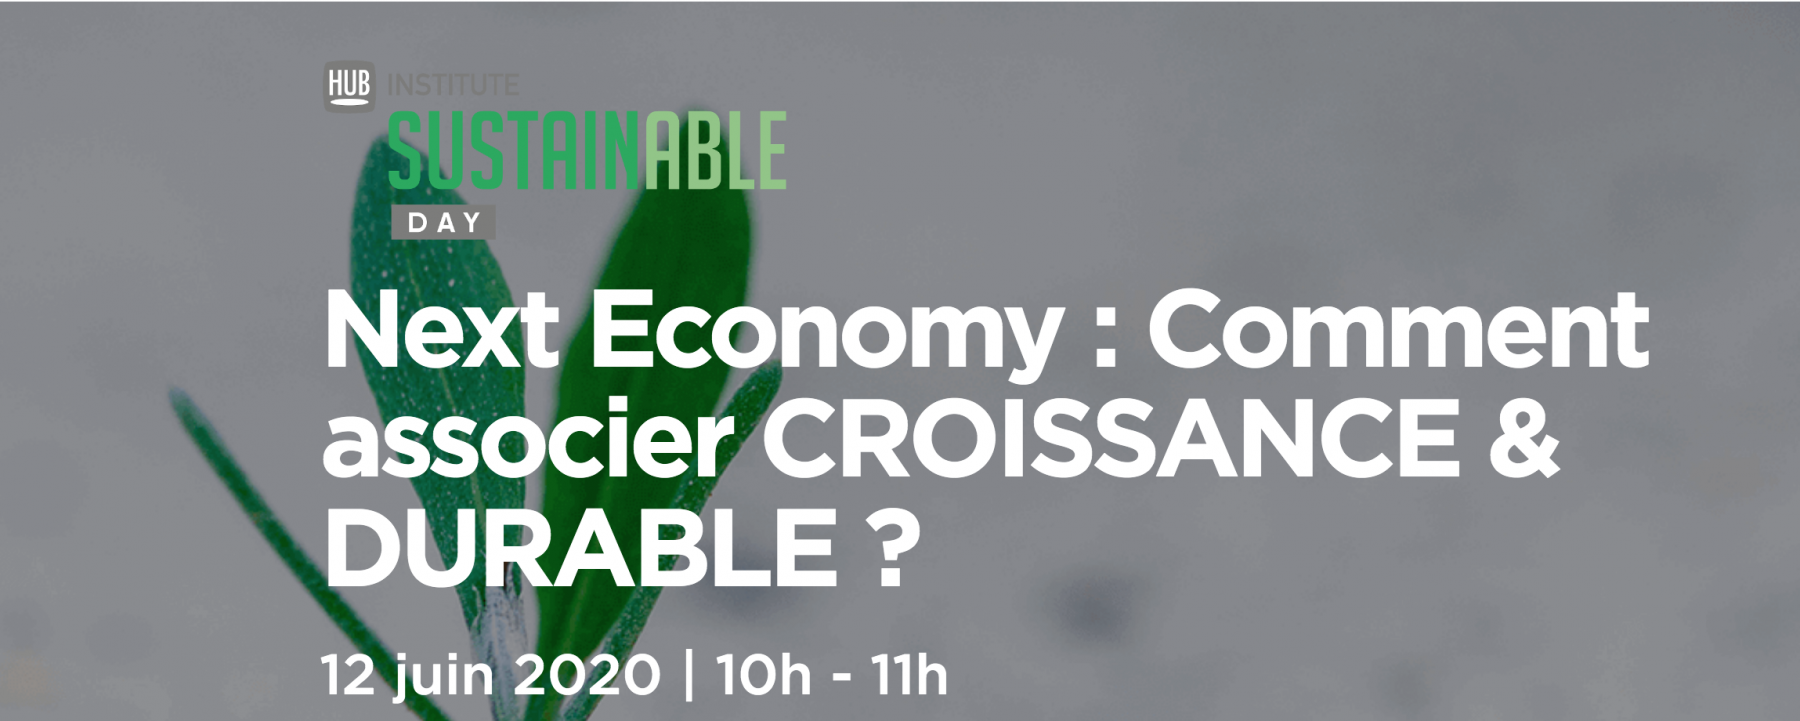 Webinar Next Economy : comment associer croissance & durable ?, le 12 juin 2020, organisé par le Hub Institute 